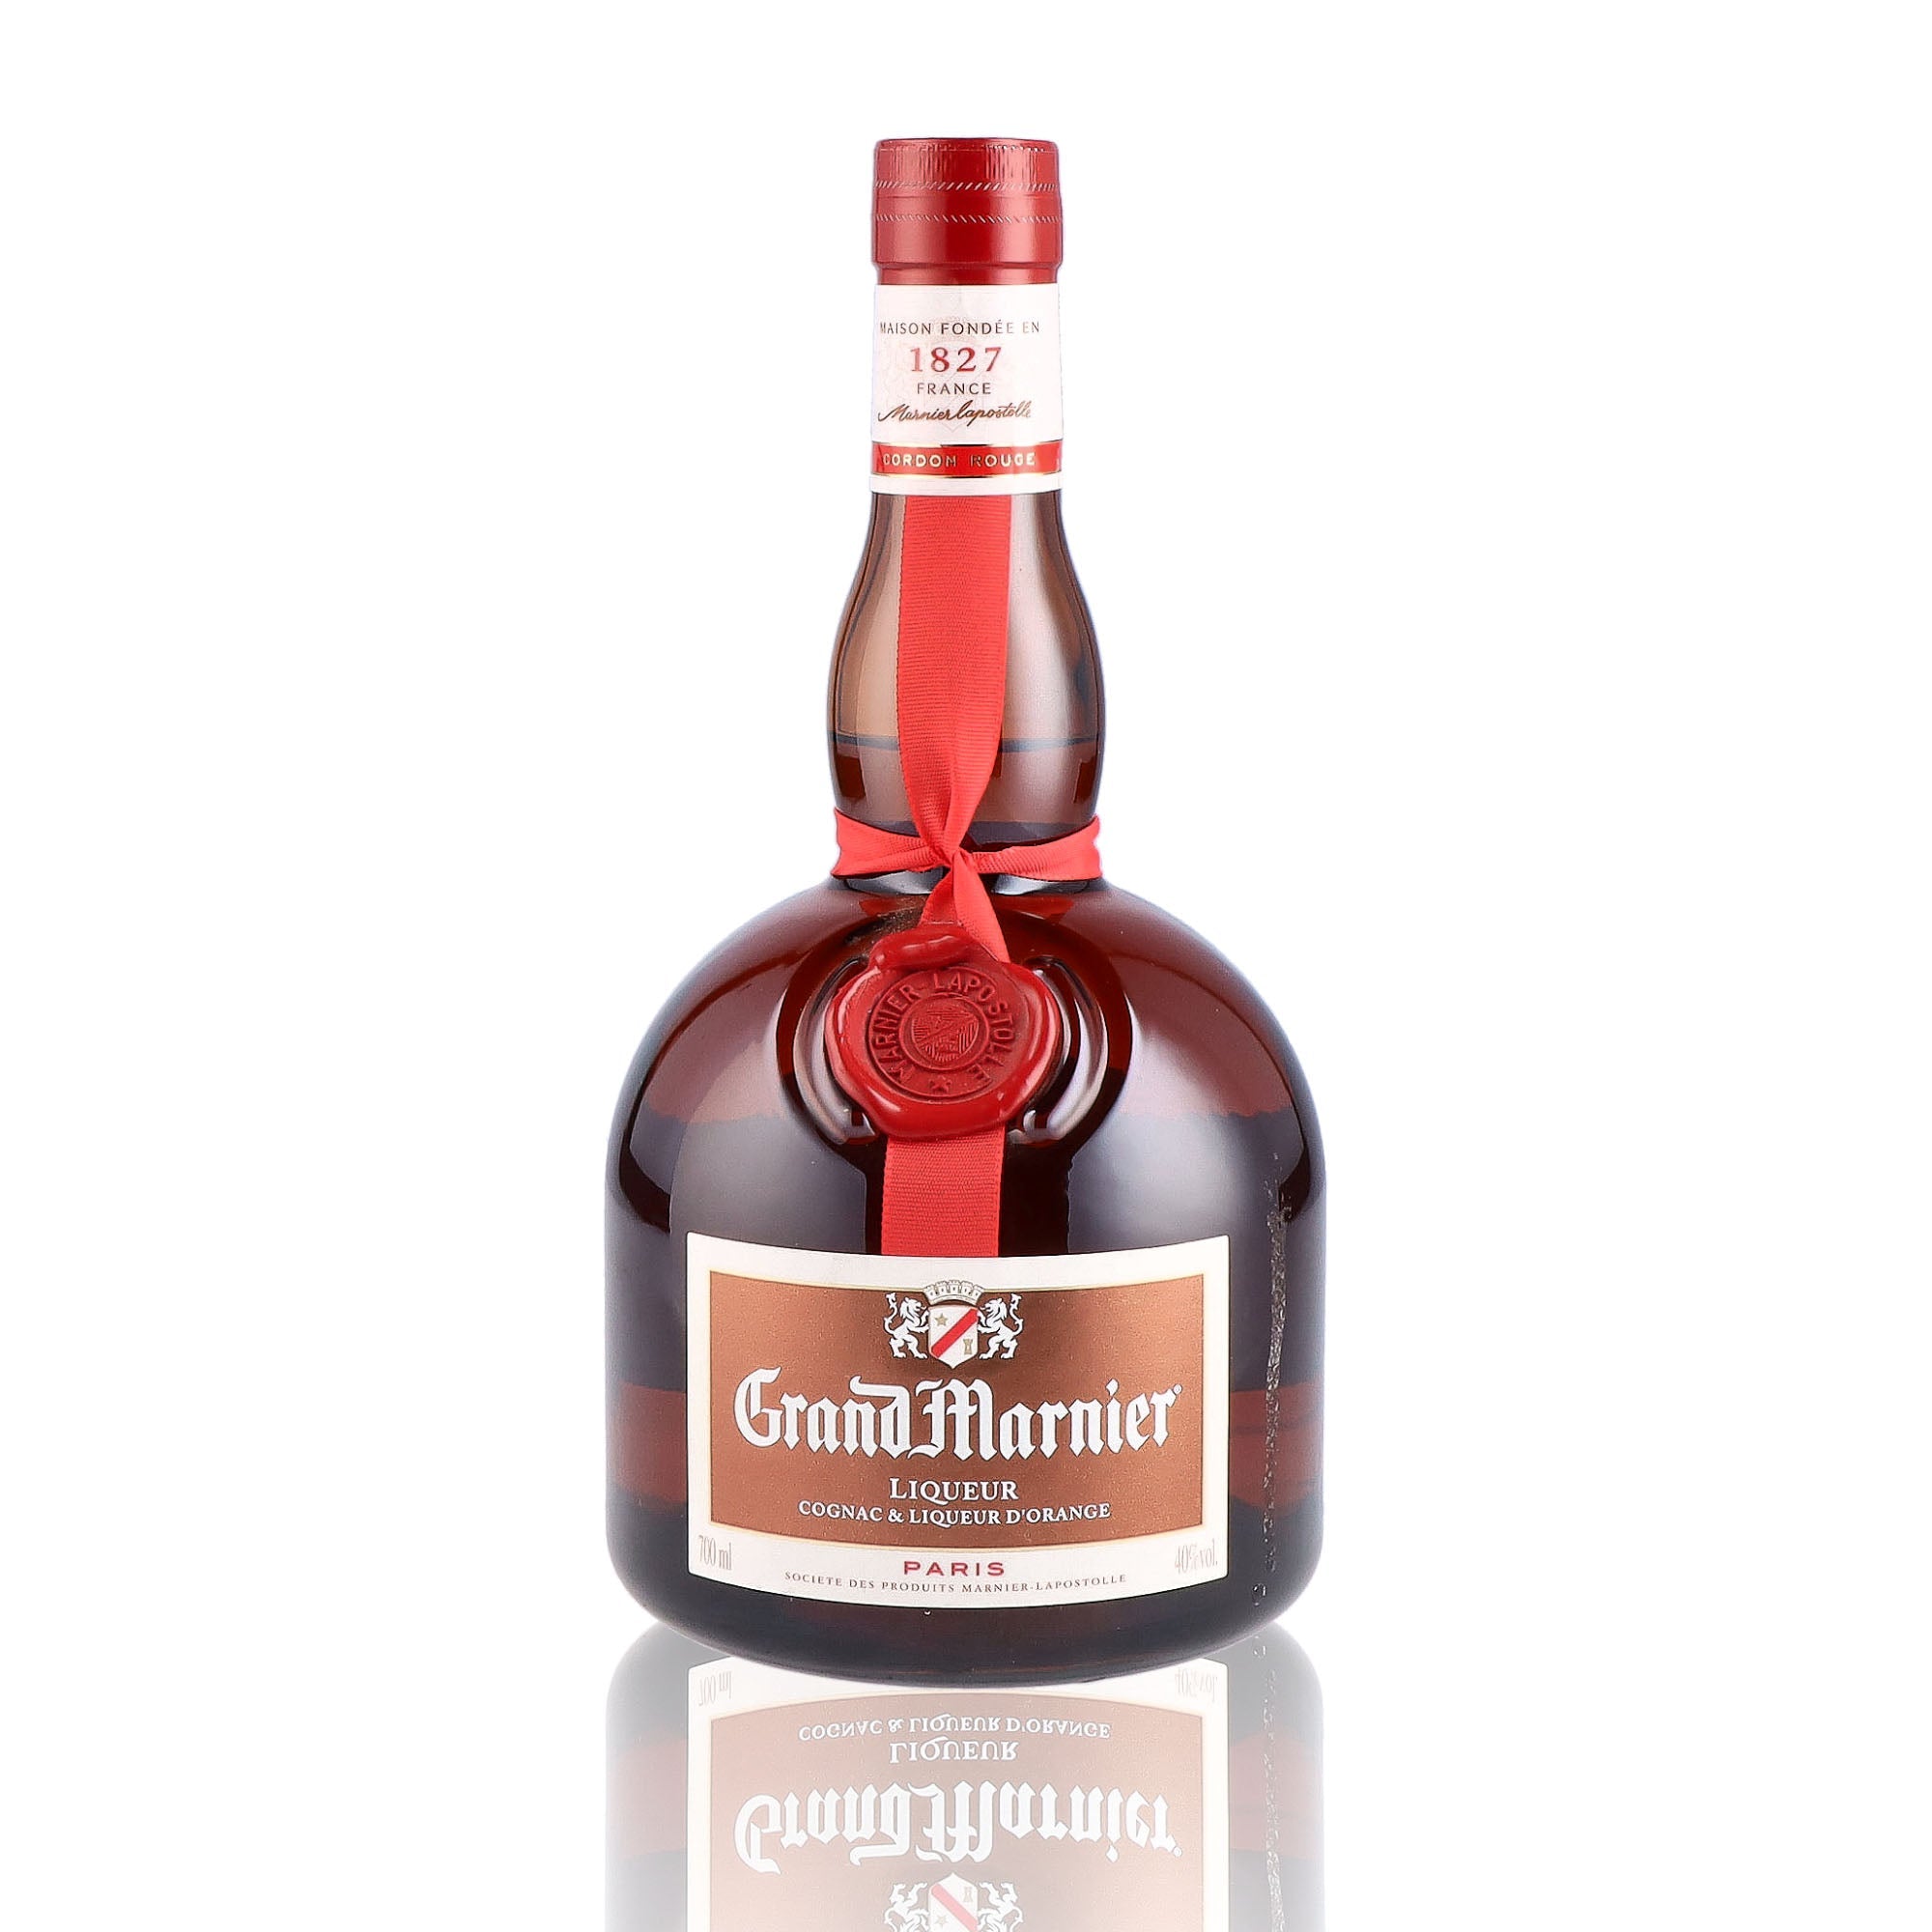 Une bouteille de Liqueur, de la marque Grand Marnier, nommée Cordon Rouge.